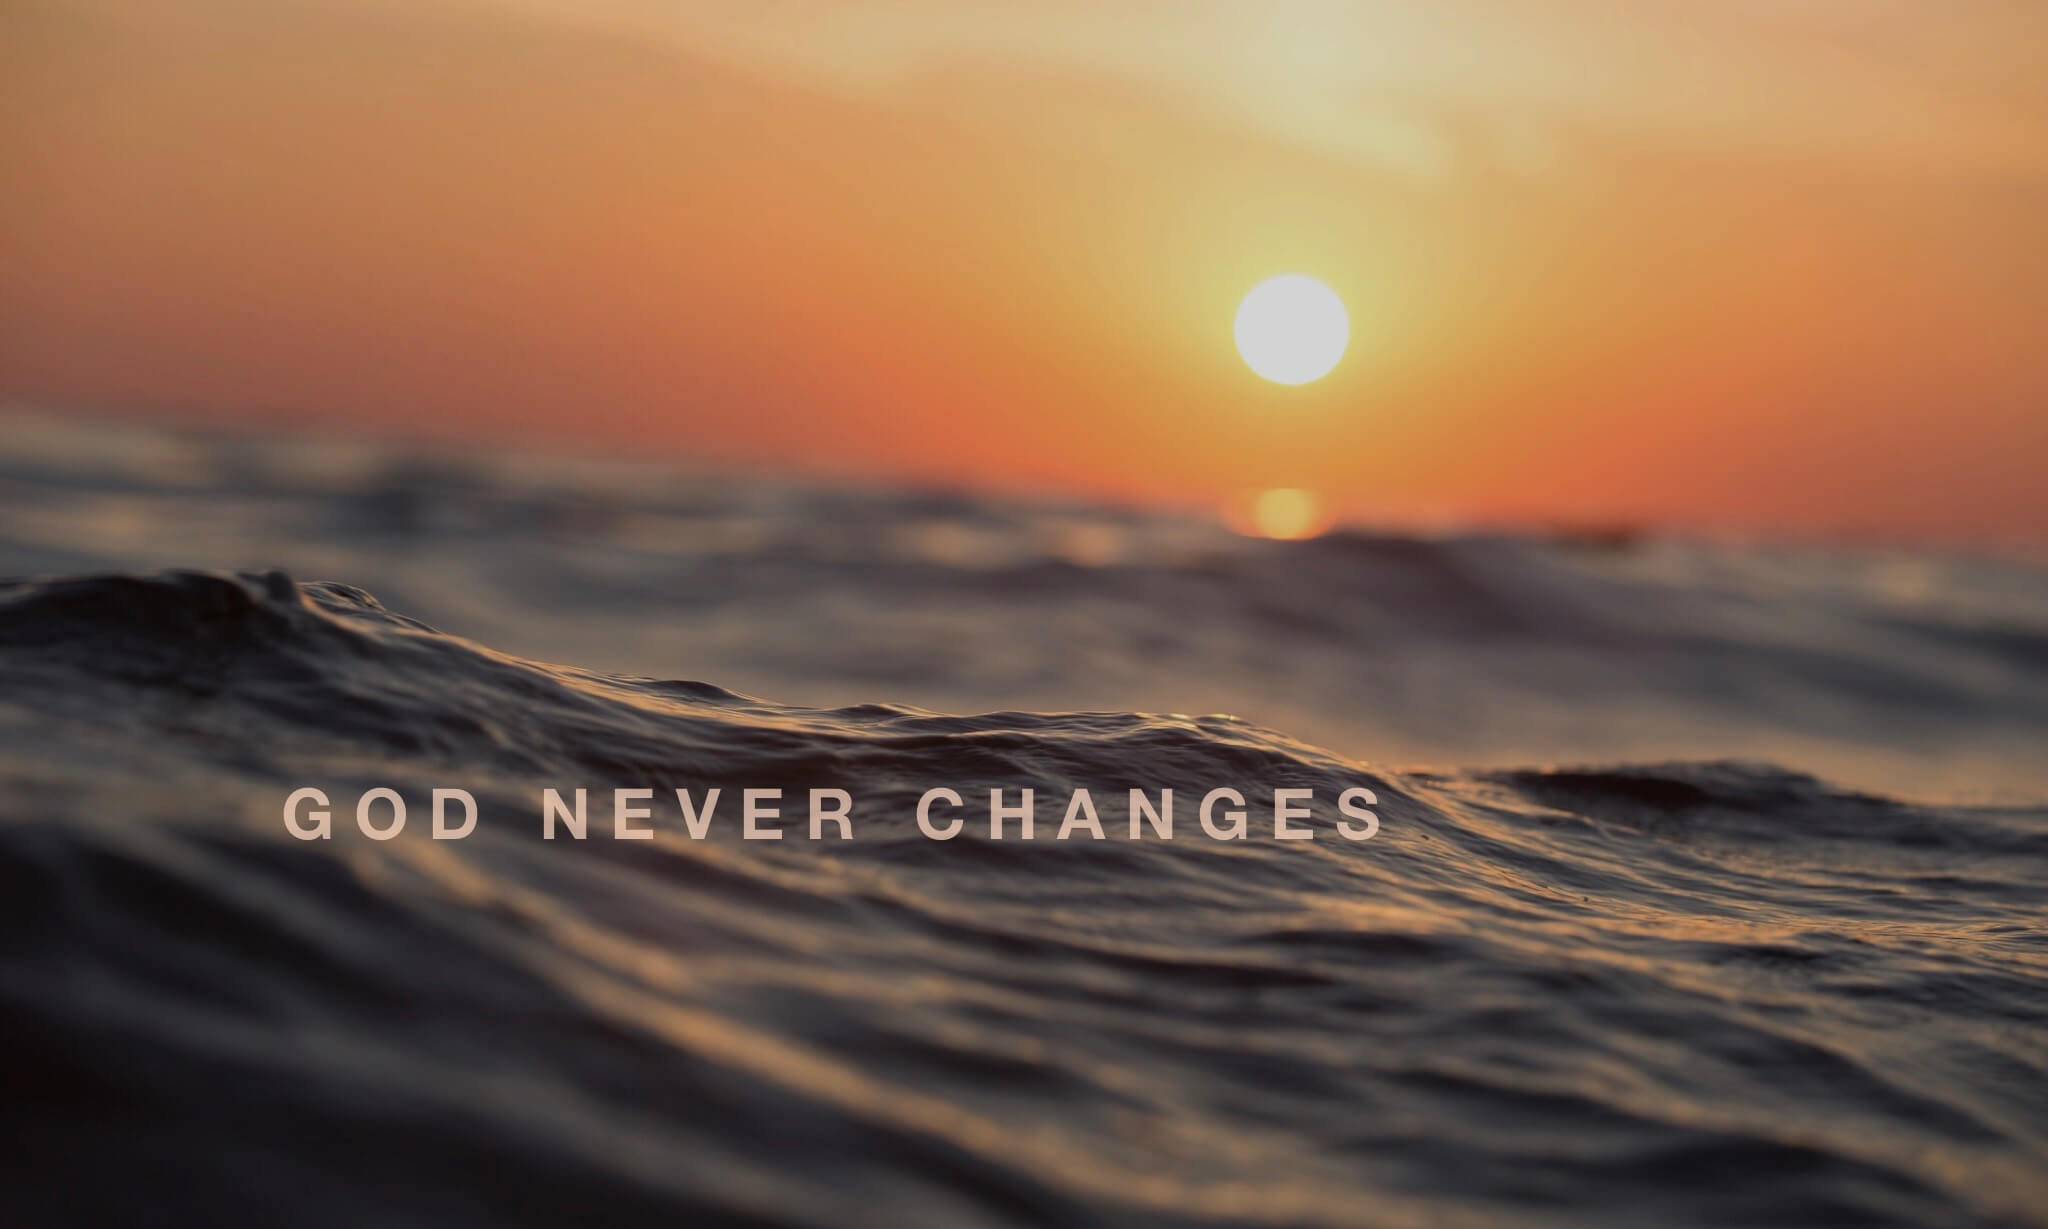 Does God change? God never changes